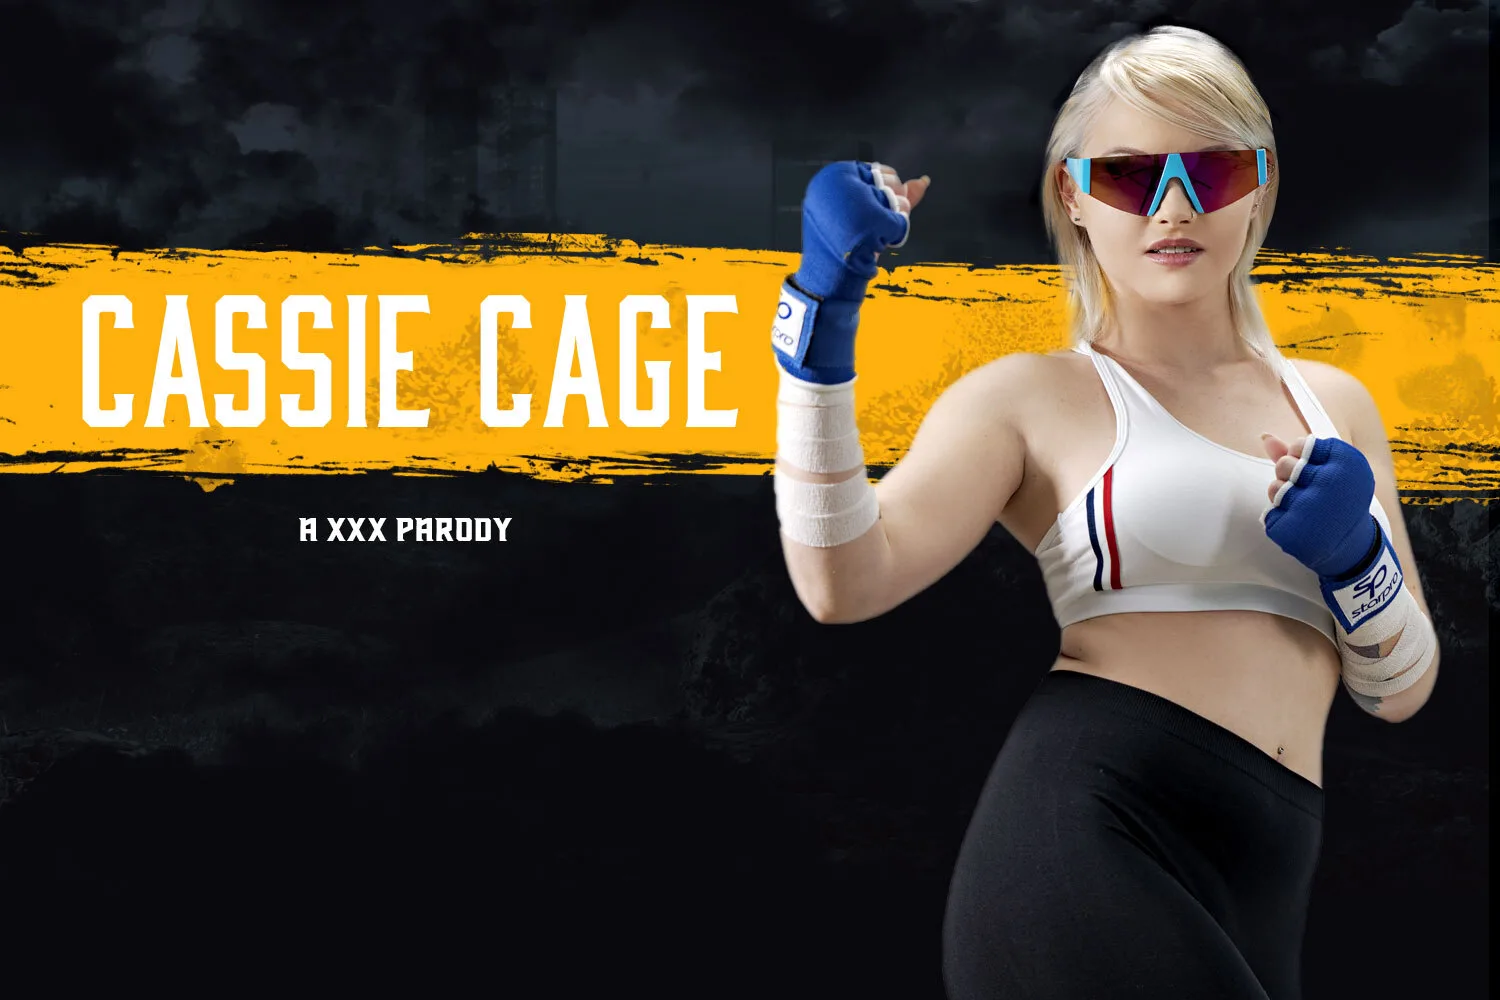 [2021-01-26] Mortal Kombat: Cassie Cage A XXX Parody - VRCosplayX